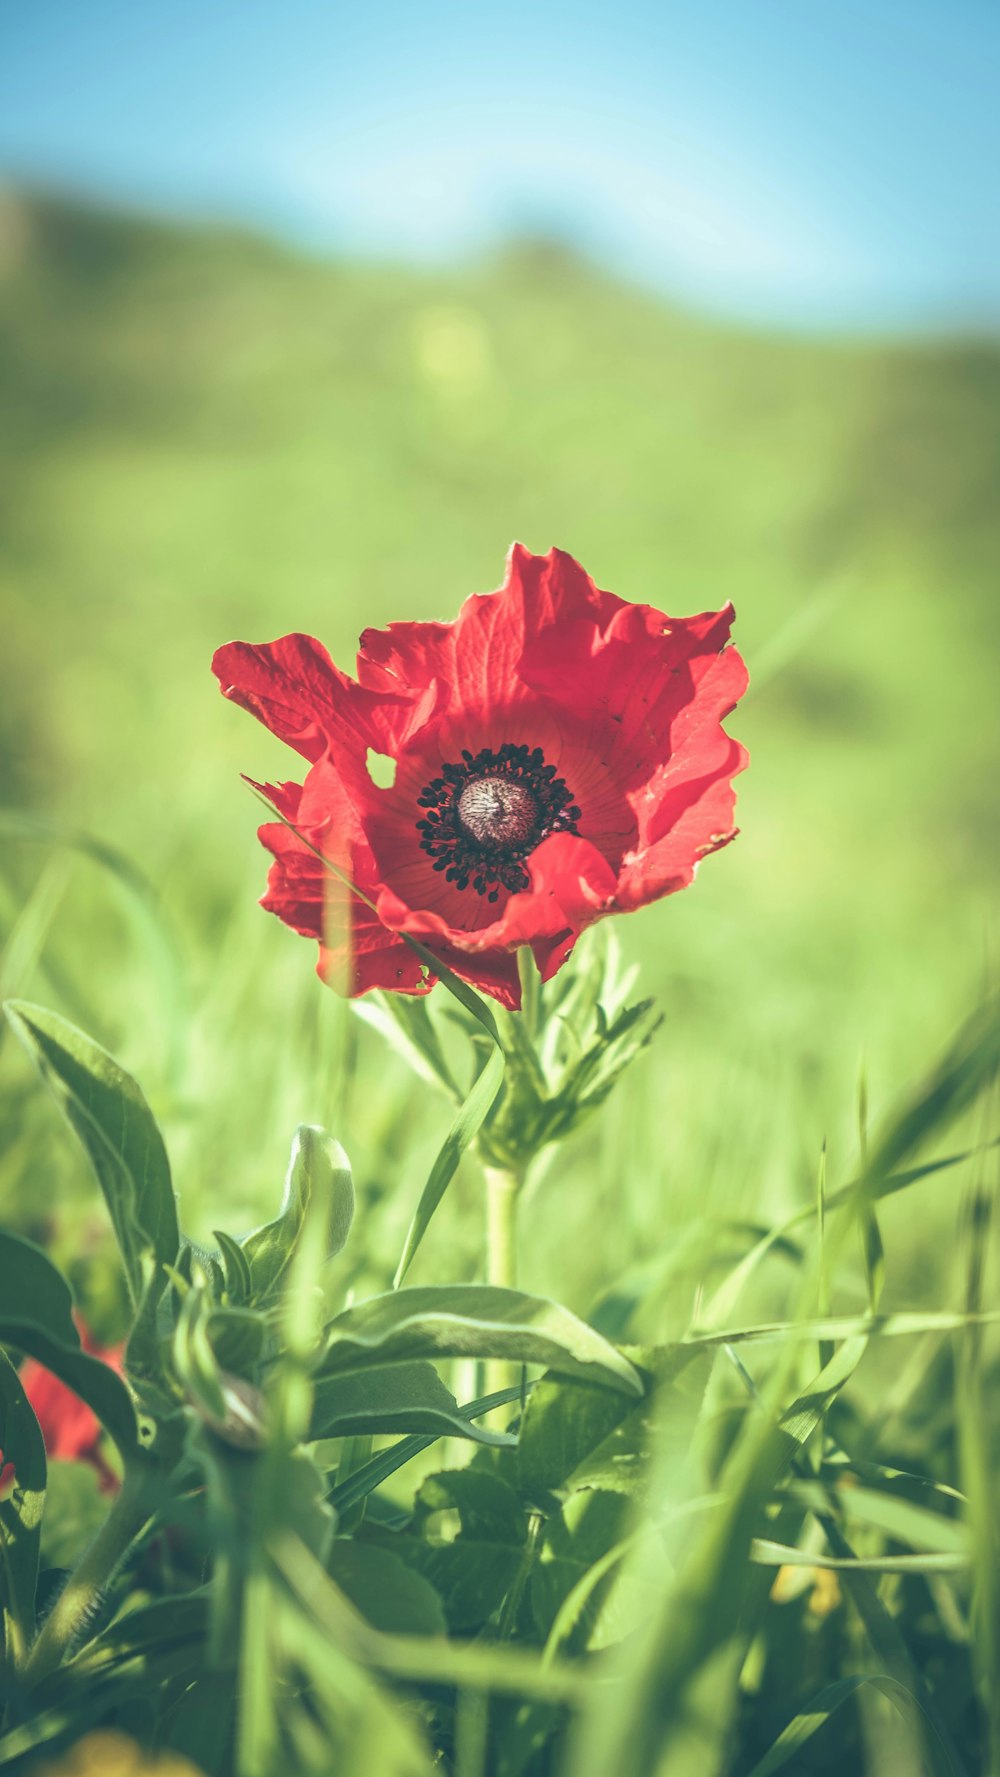 flor vermelha na grama verde durante o dia